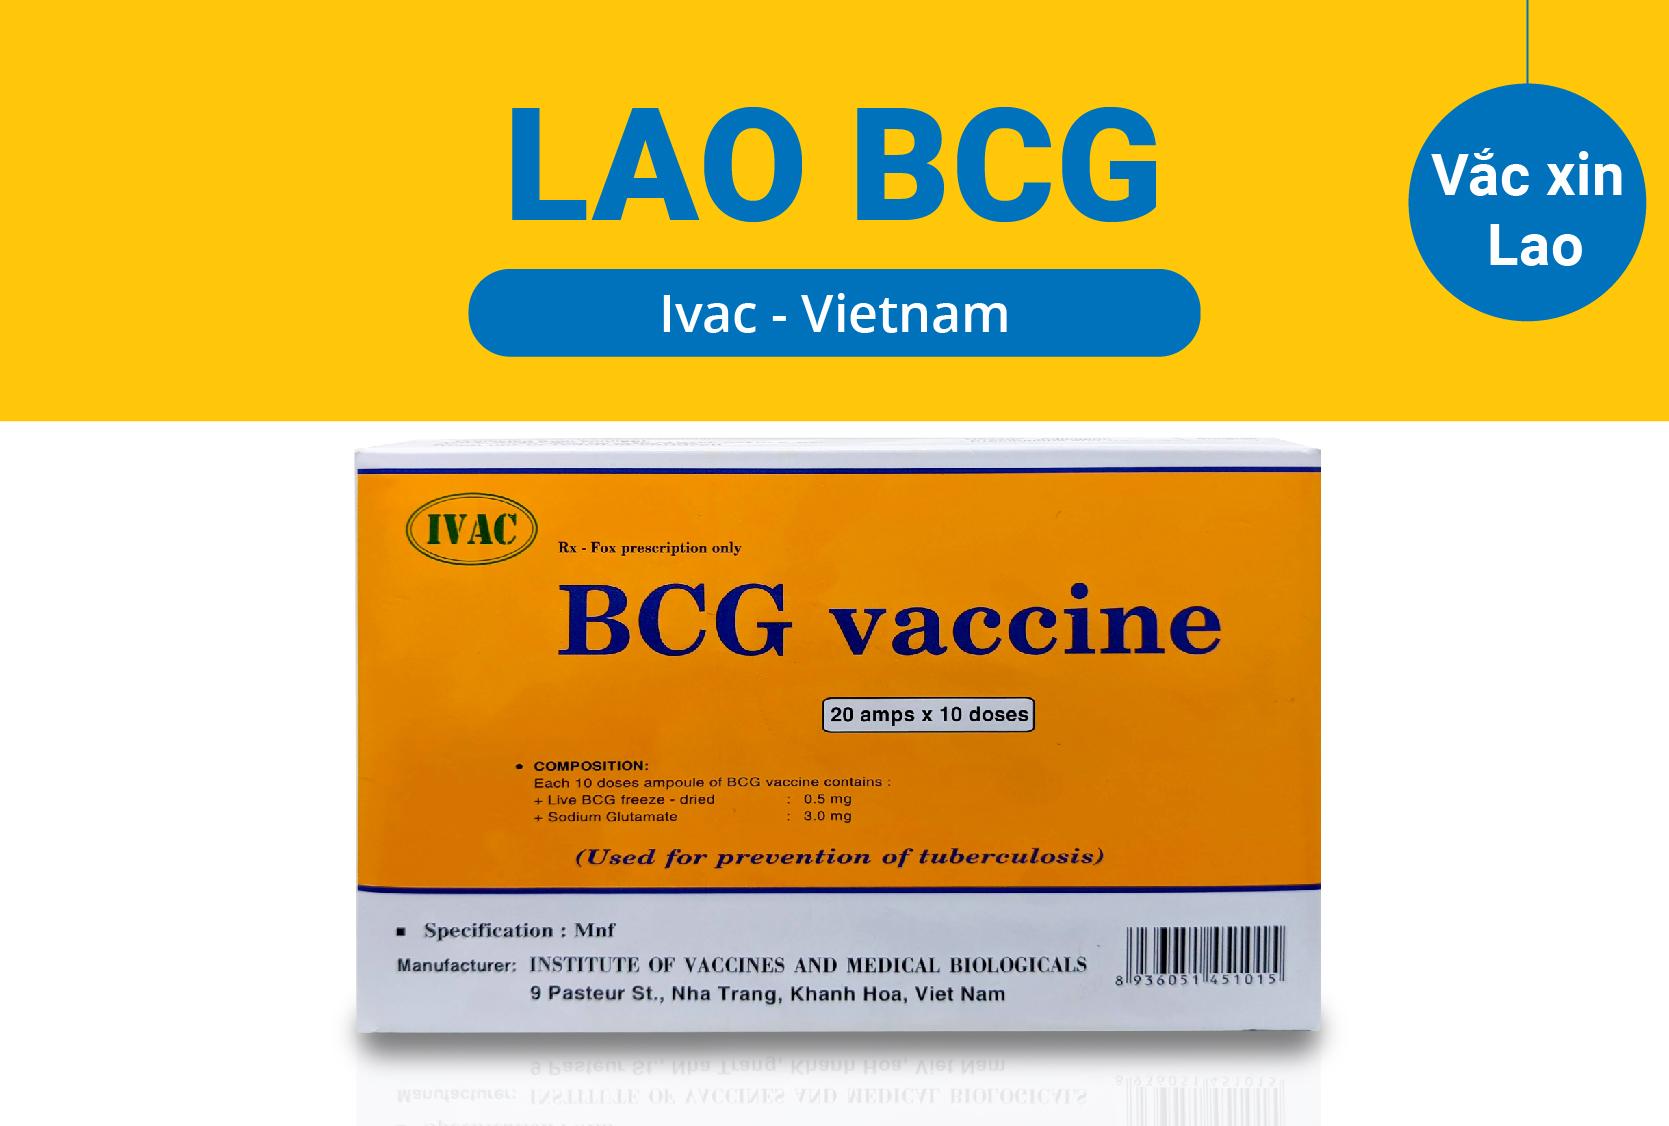 Vacxin lao là một loại vacxin được sử dụng để phòng ngừa và kiểm soát bệnh lao